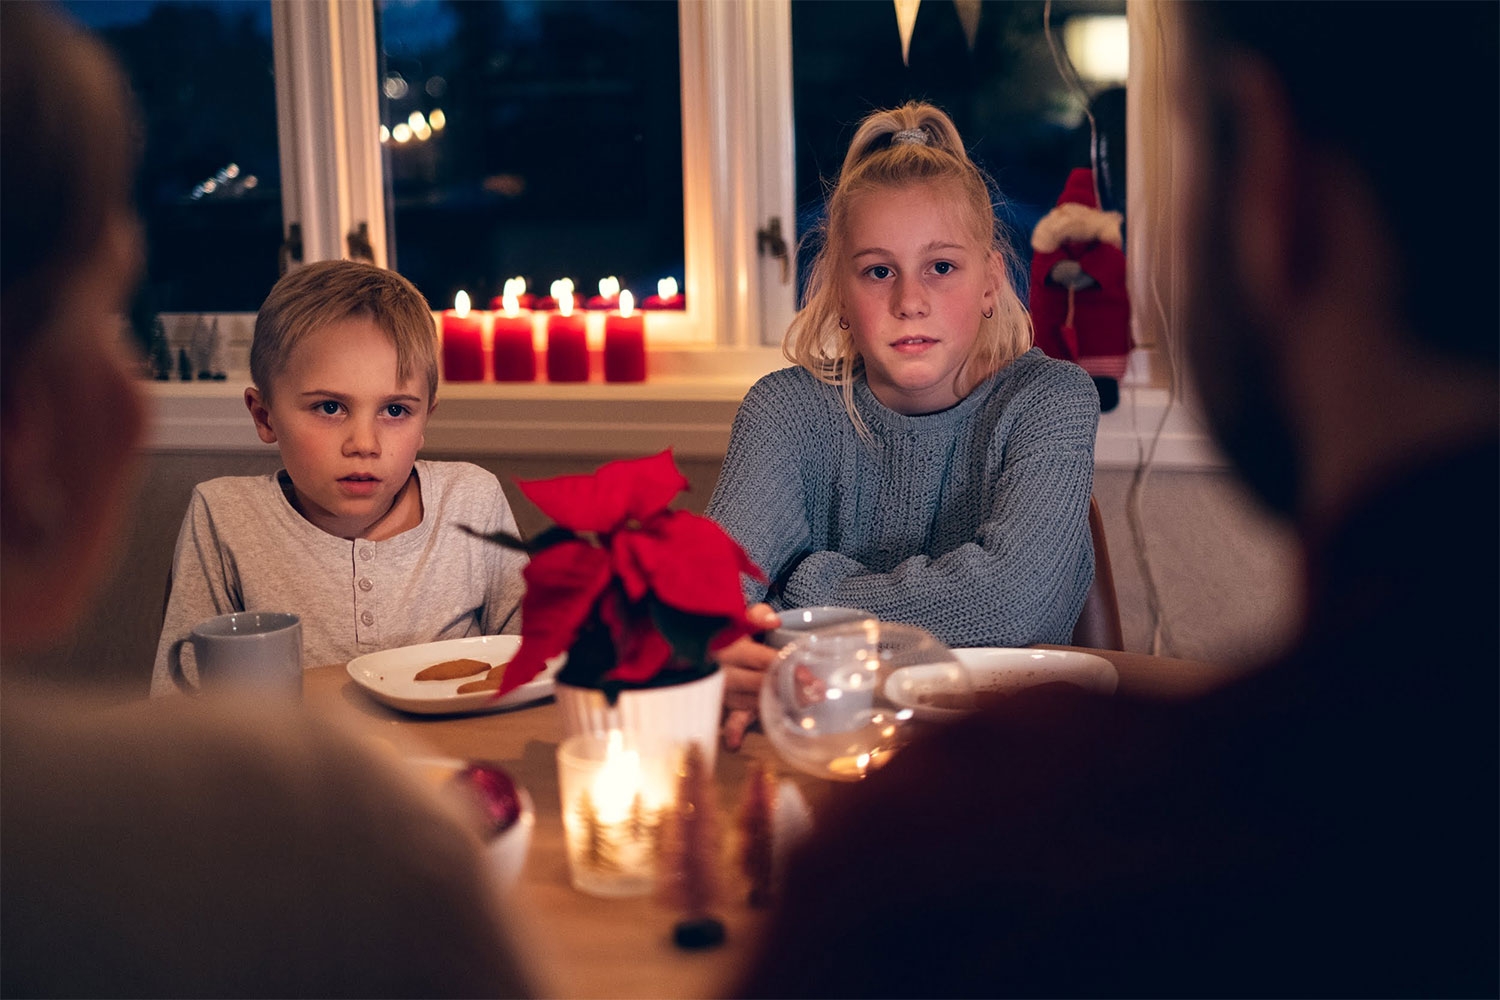 Desember er den måneden det kjøpes mest alkohol i Norge. – For barna betyr det ofte en utrygg julefeiring, sier Randi Hagen Eriksrud i Av-og-til.